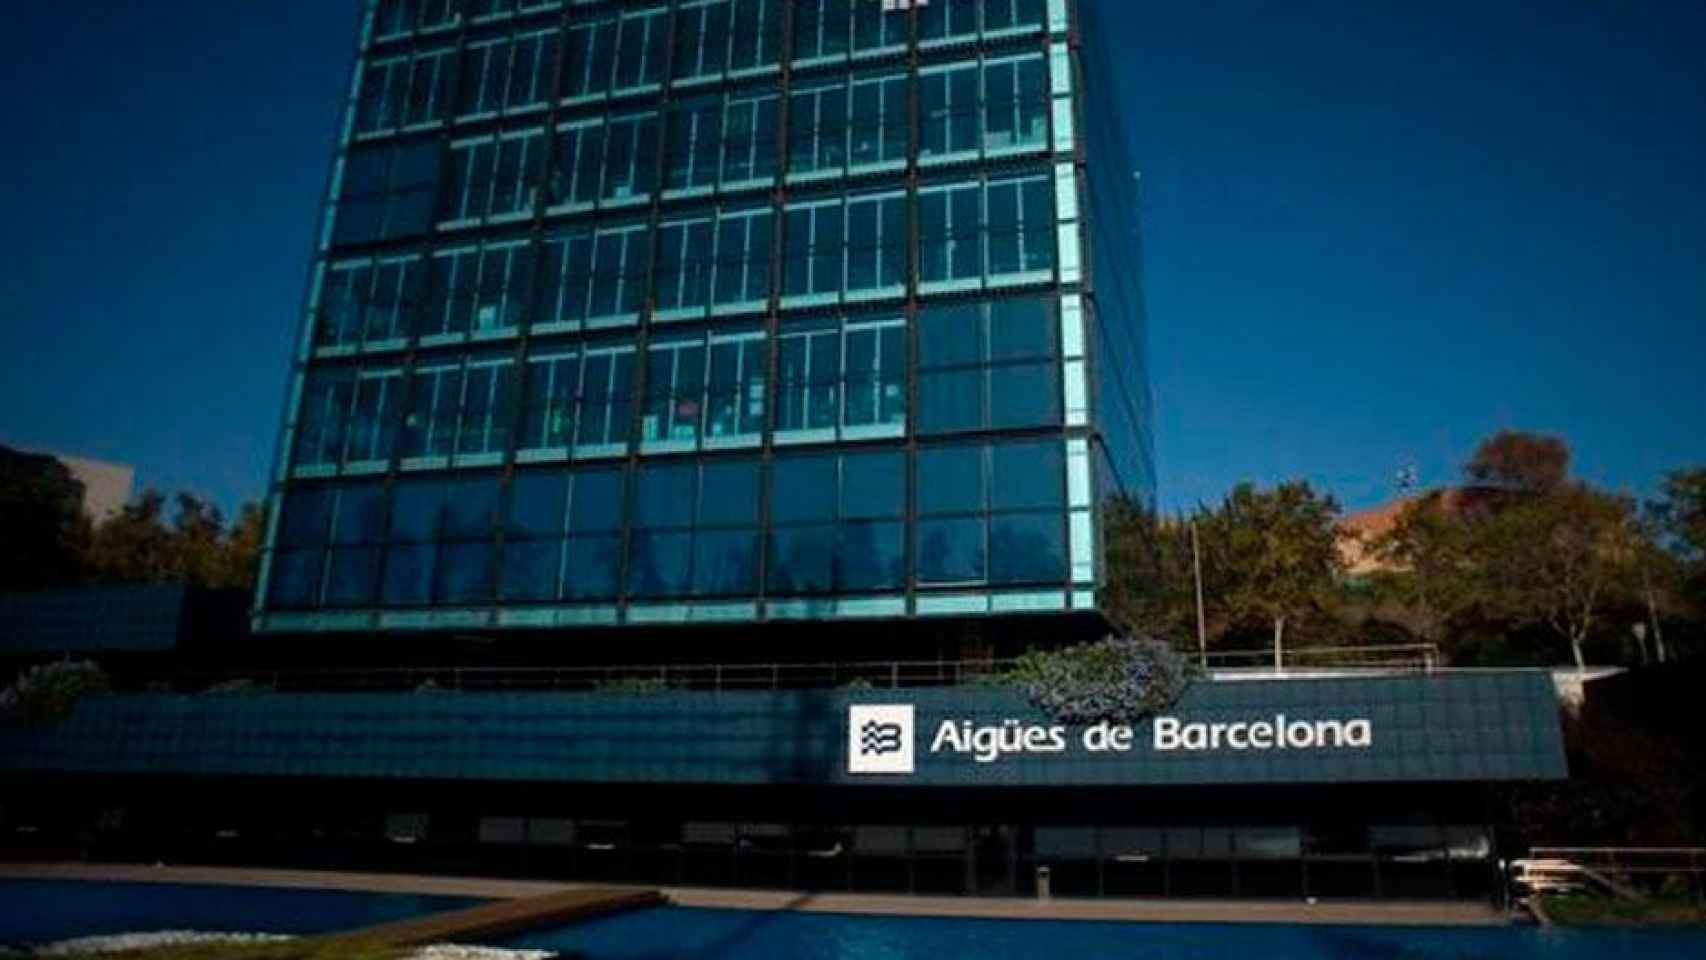 Aïgues de Barcelona, una de las pocas empresas fugadas que han devuelto su sede a Cataluña / AGBAR